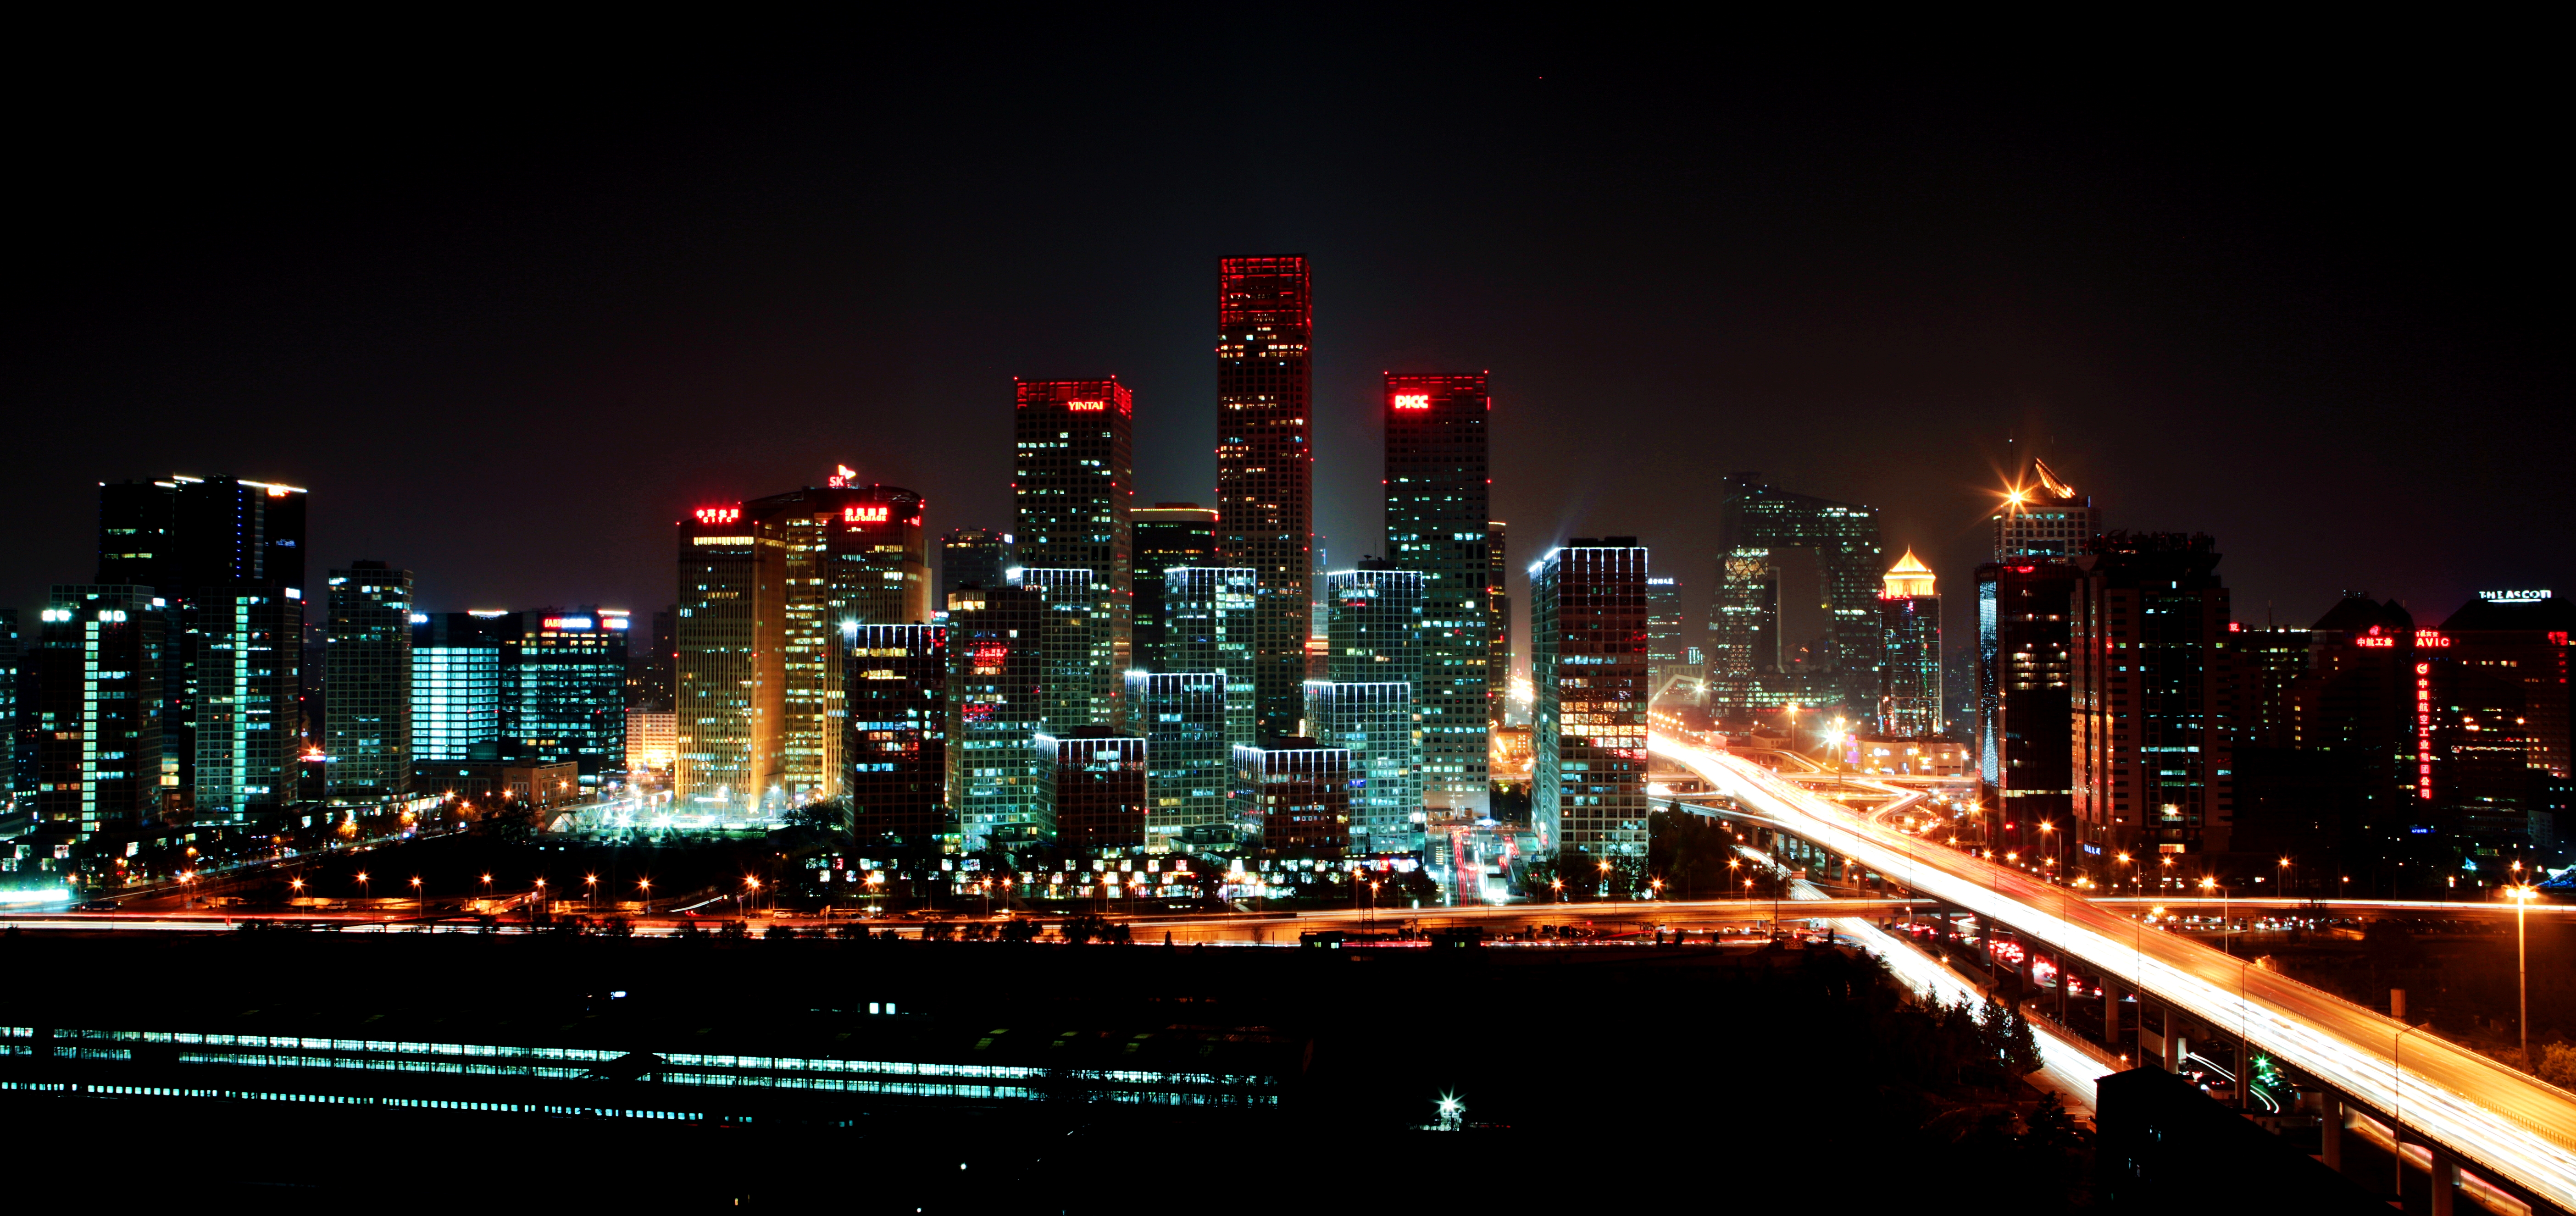 北京金融商业区夜景高清大图片jpg下载